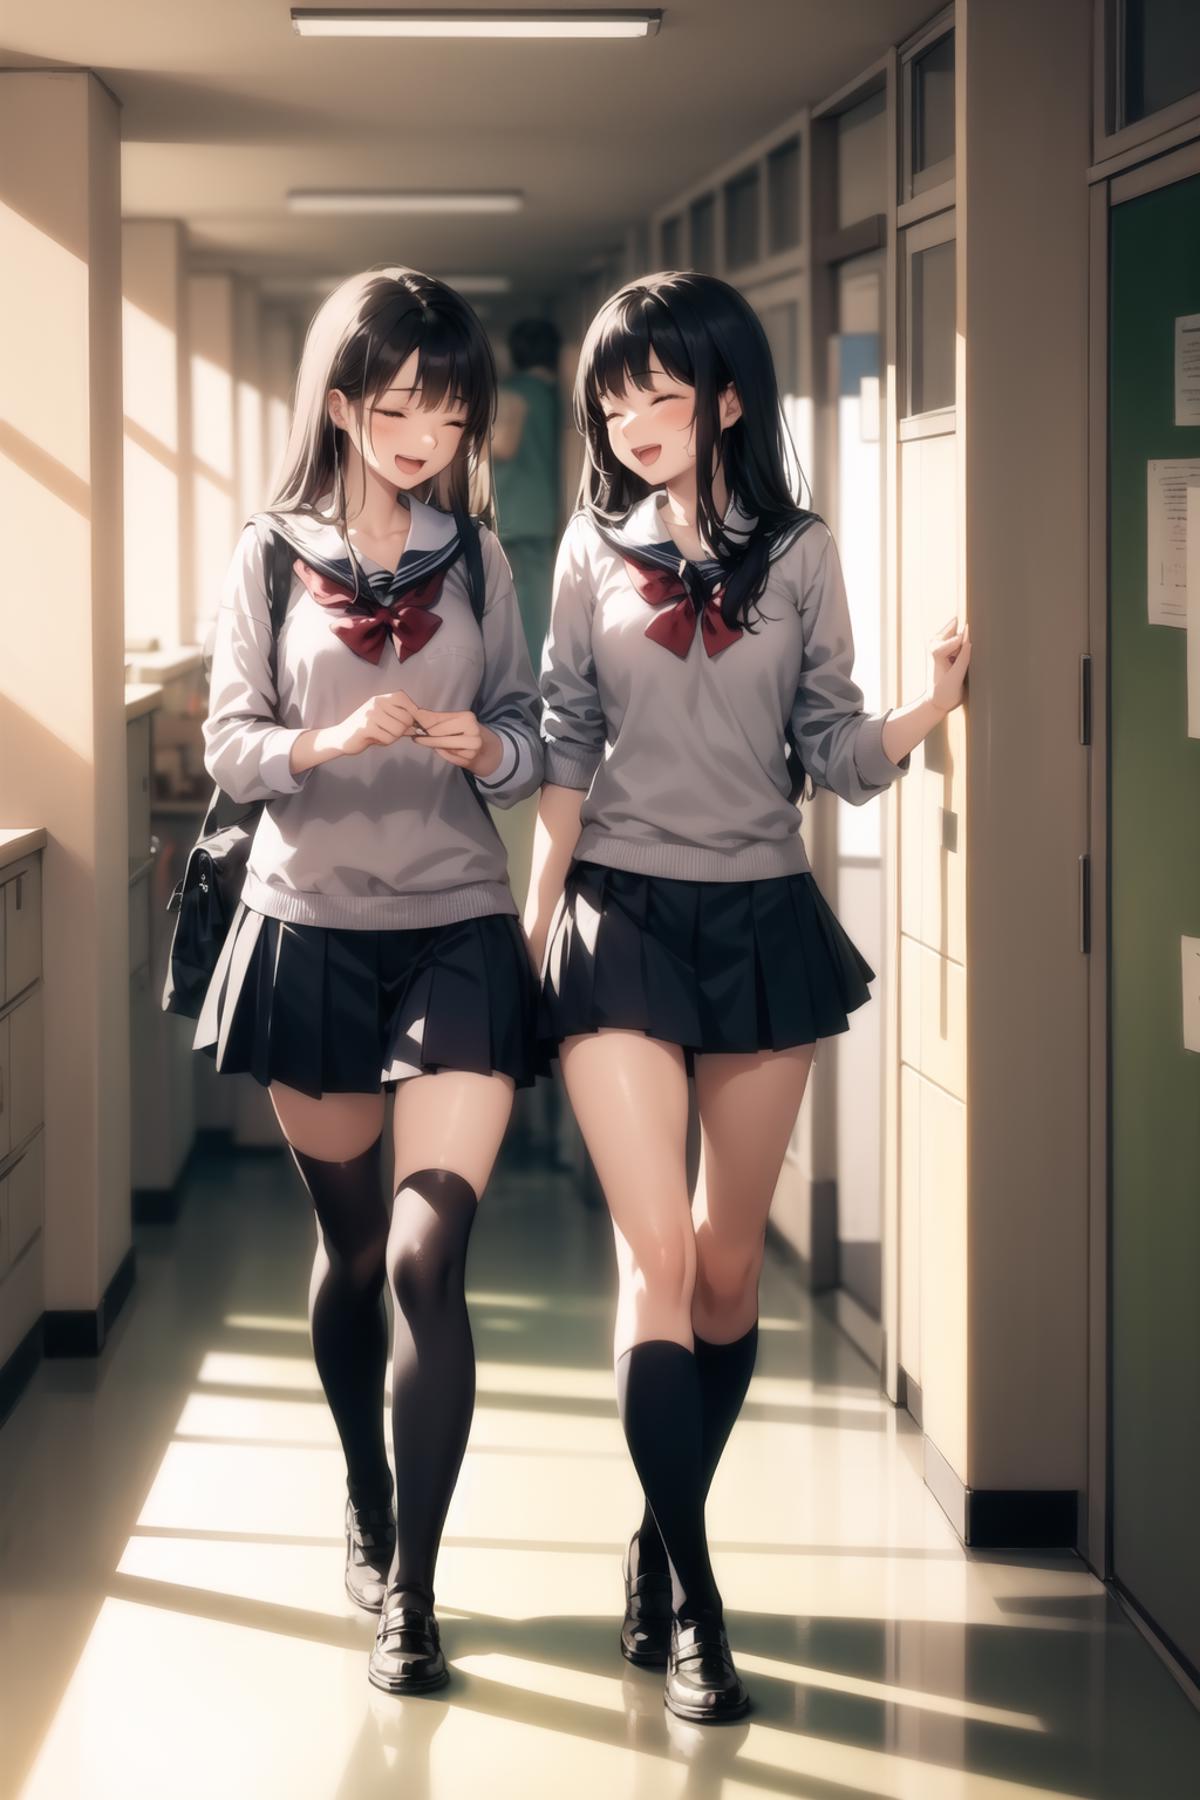 Two girls in school uniforms walking down a hallway.